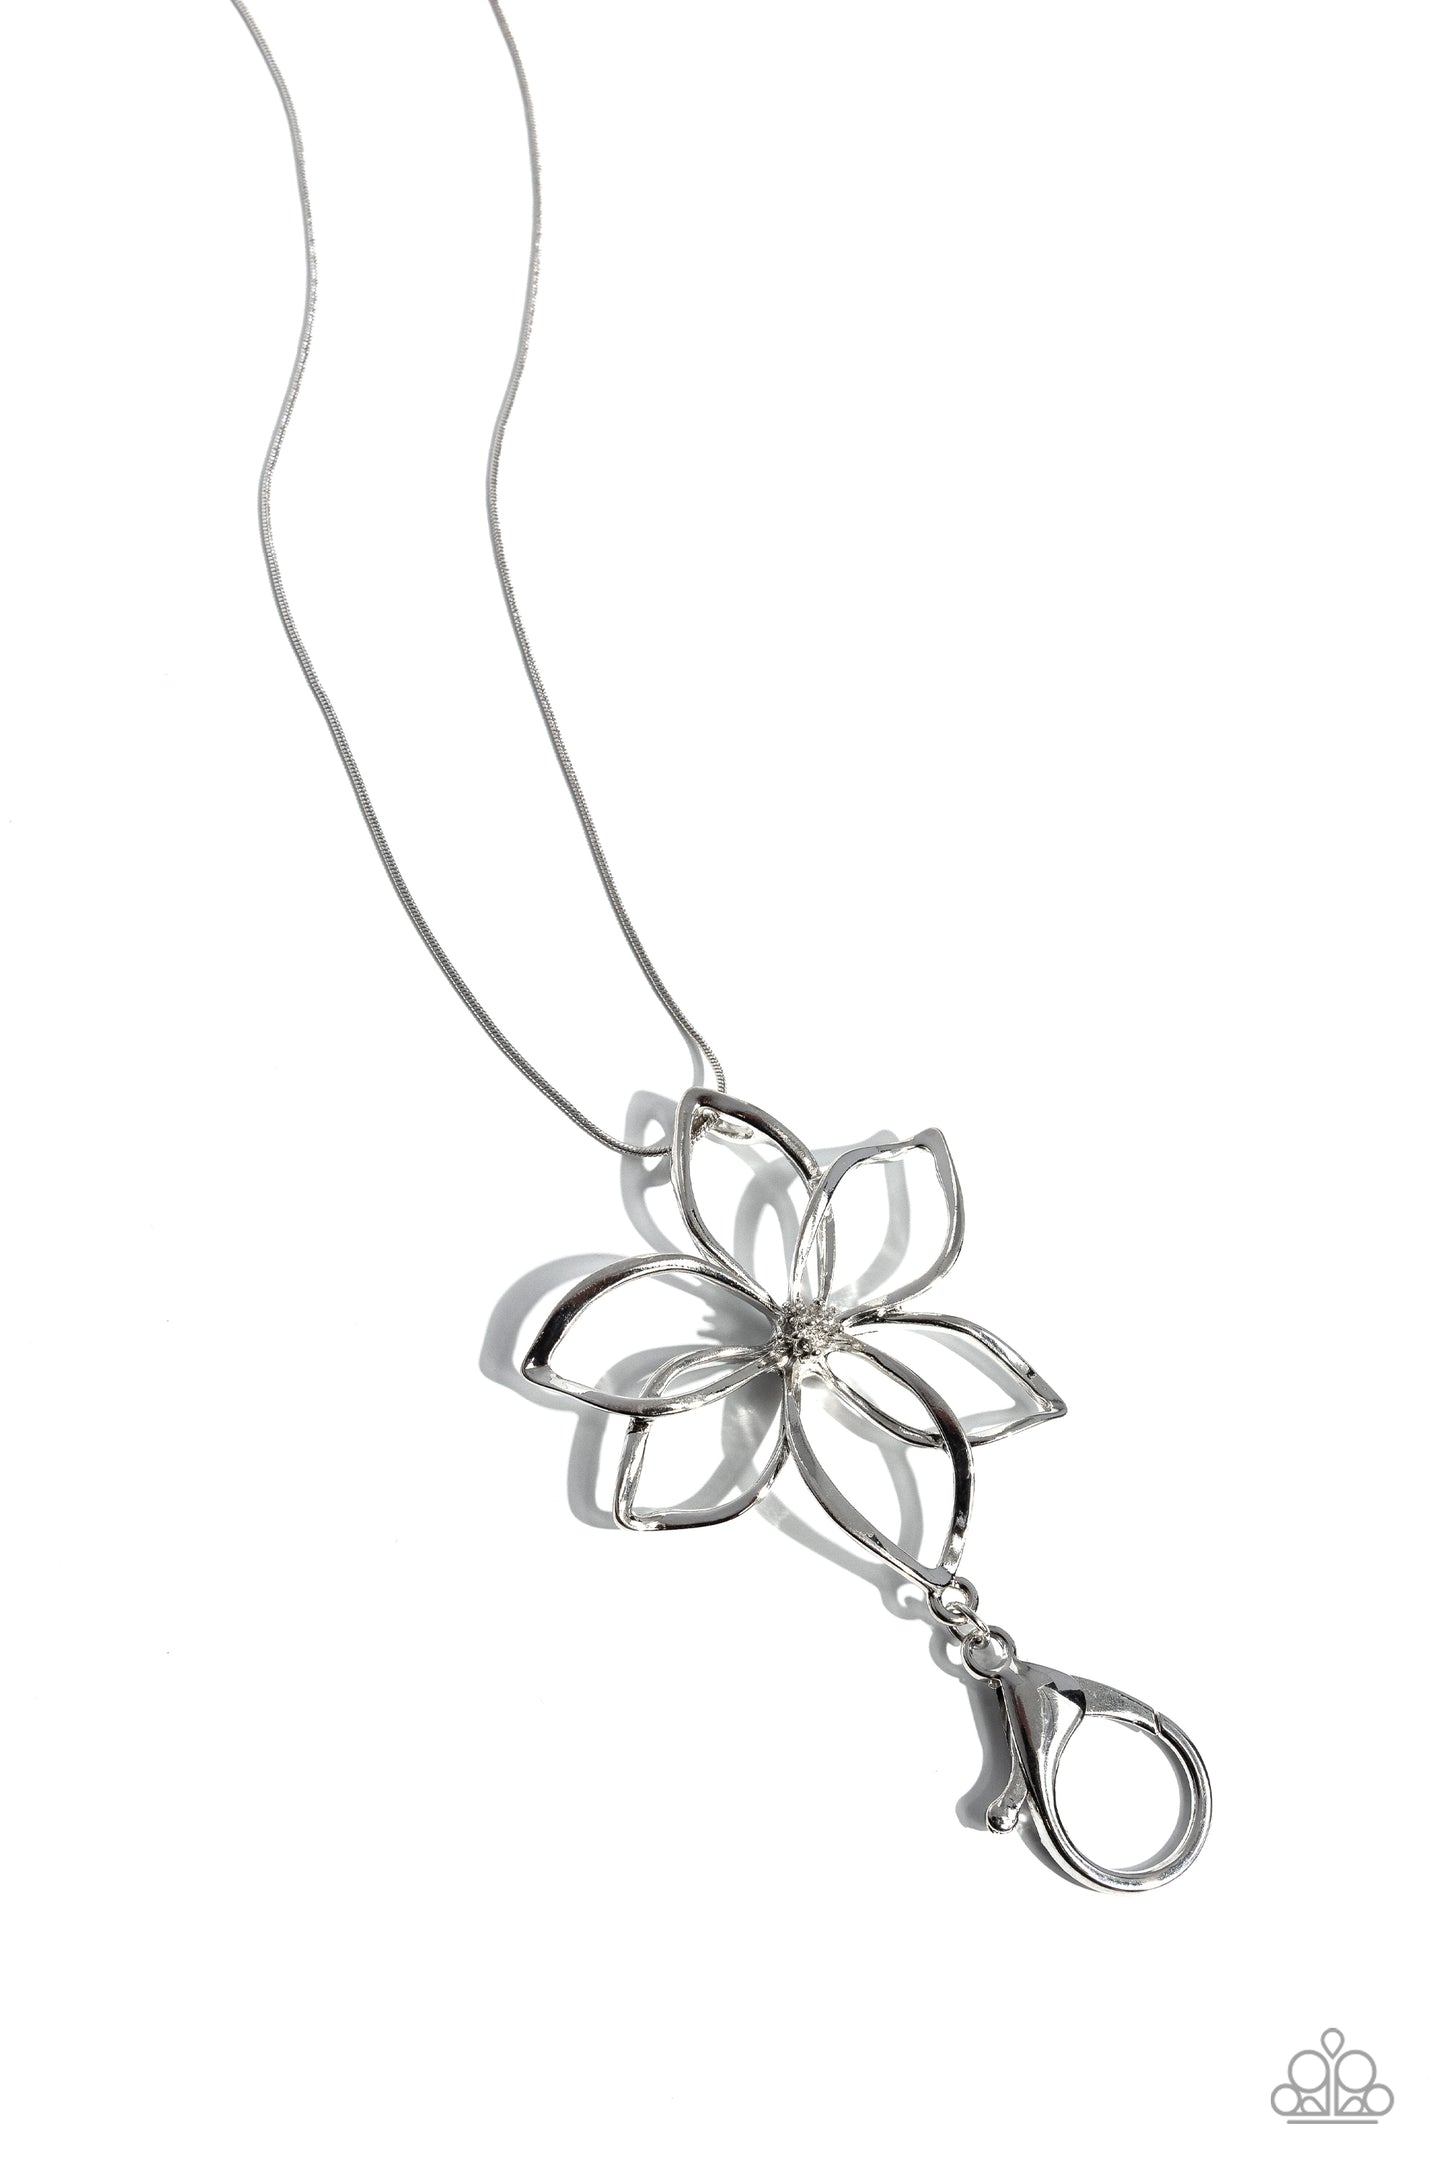 Flowering Fame - silver - Paparazzi LANYARD necklace